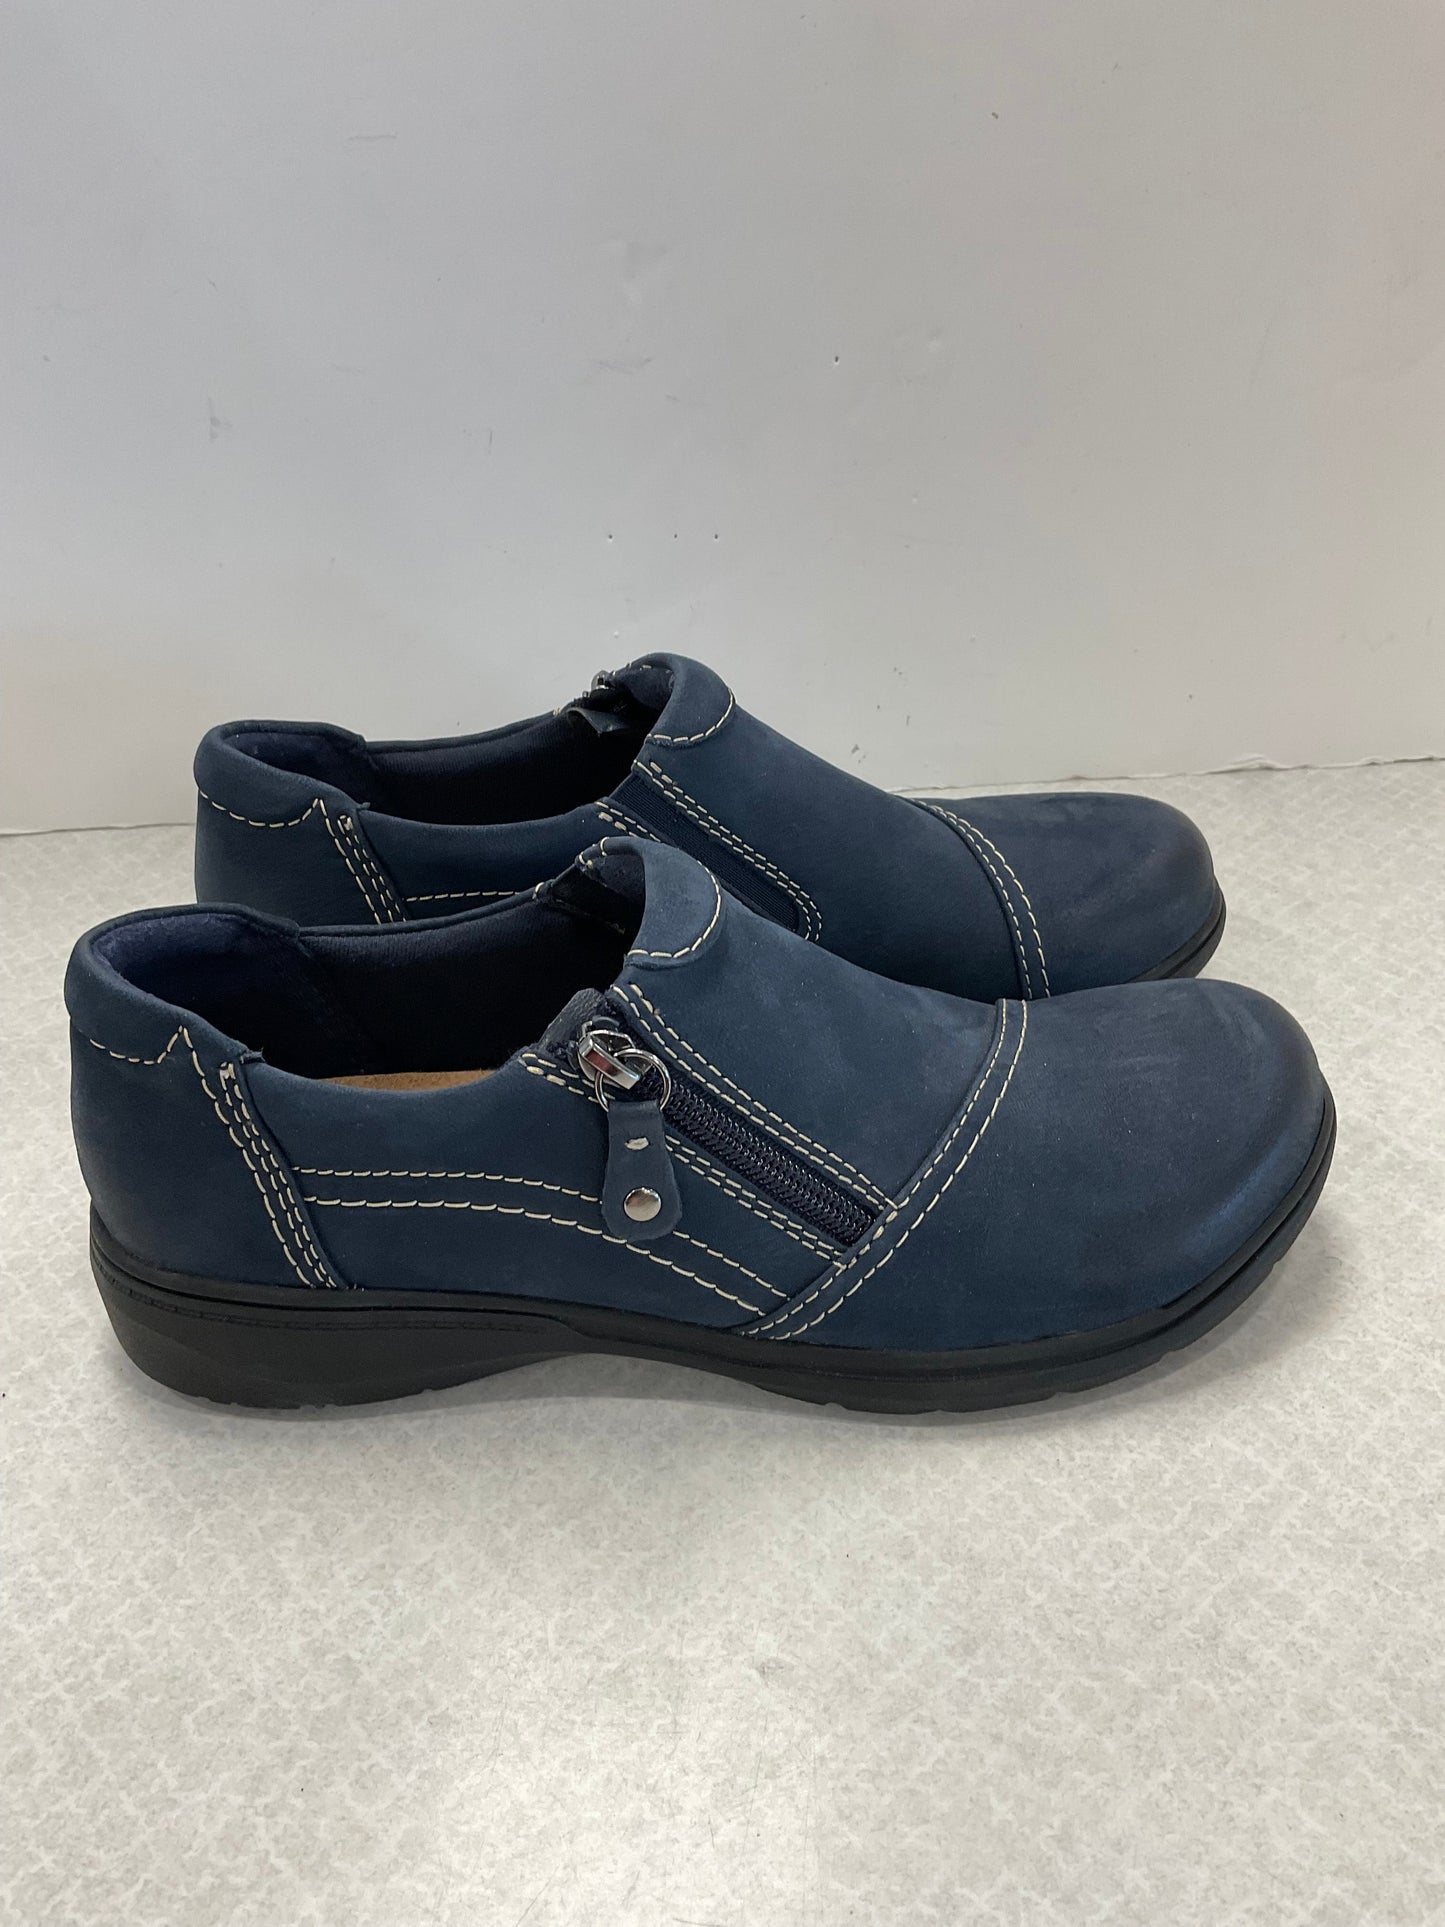 Blue Shoes Flats Clarks, Size 8.5